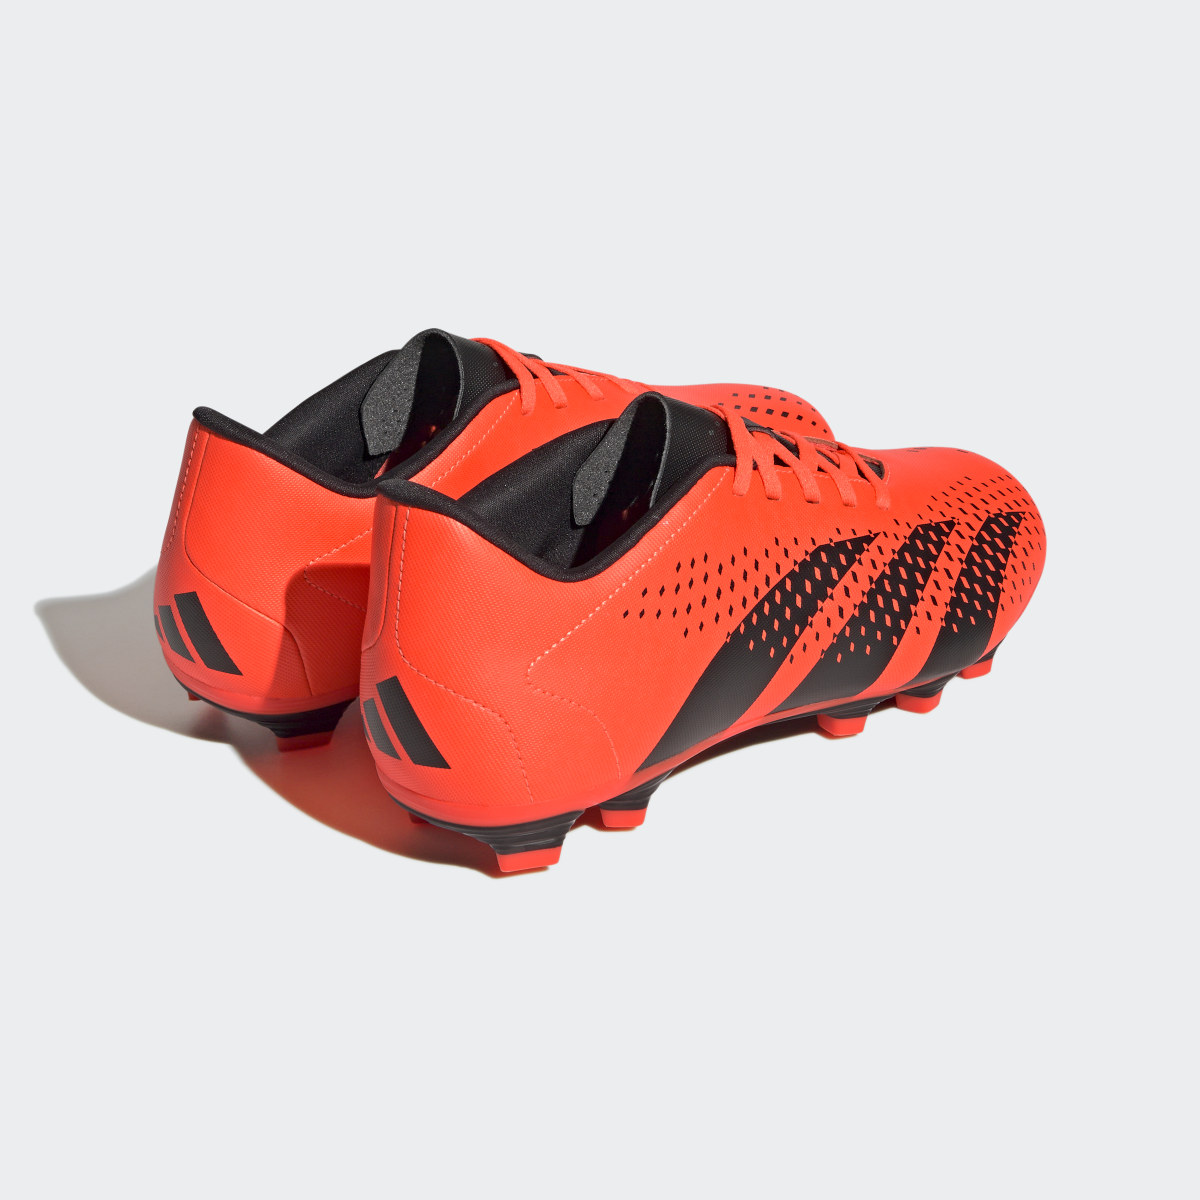 Adidas Scarpe da calcio Predator Accuracy.4 Flexible Ground. 6